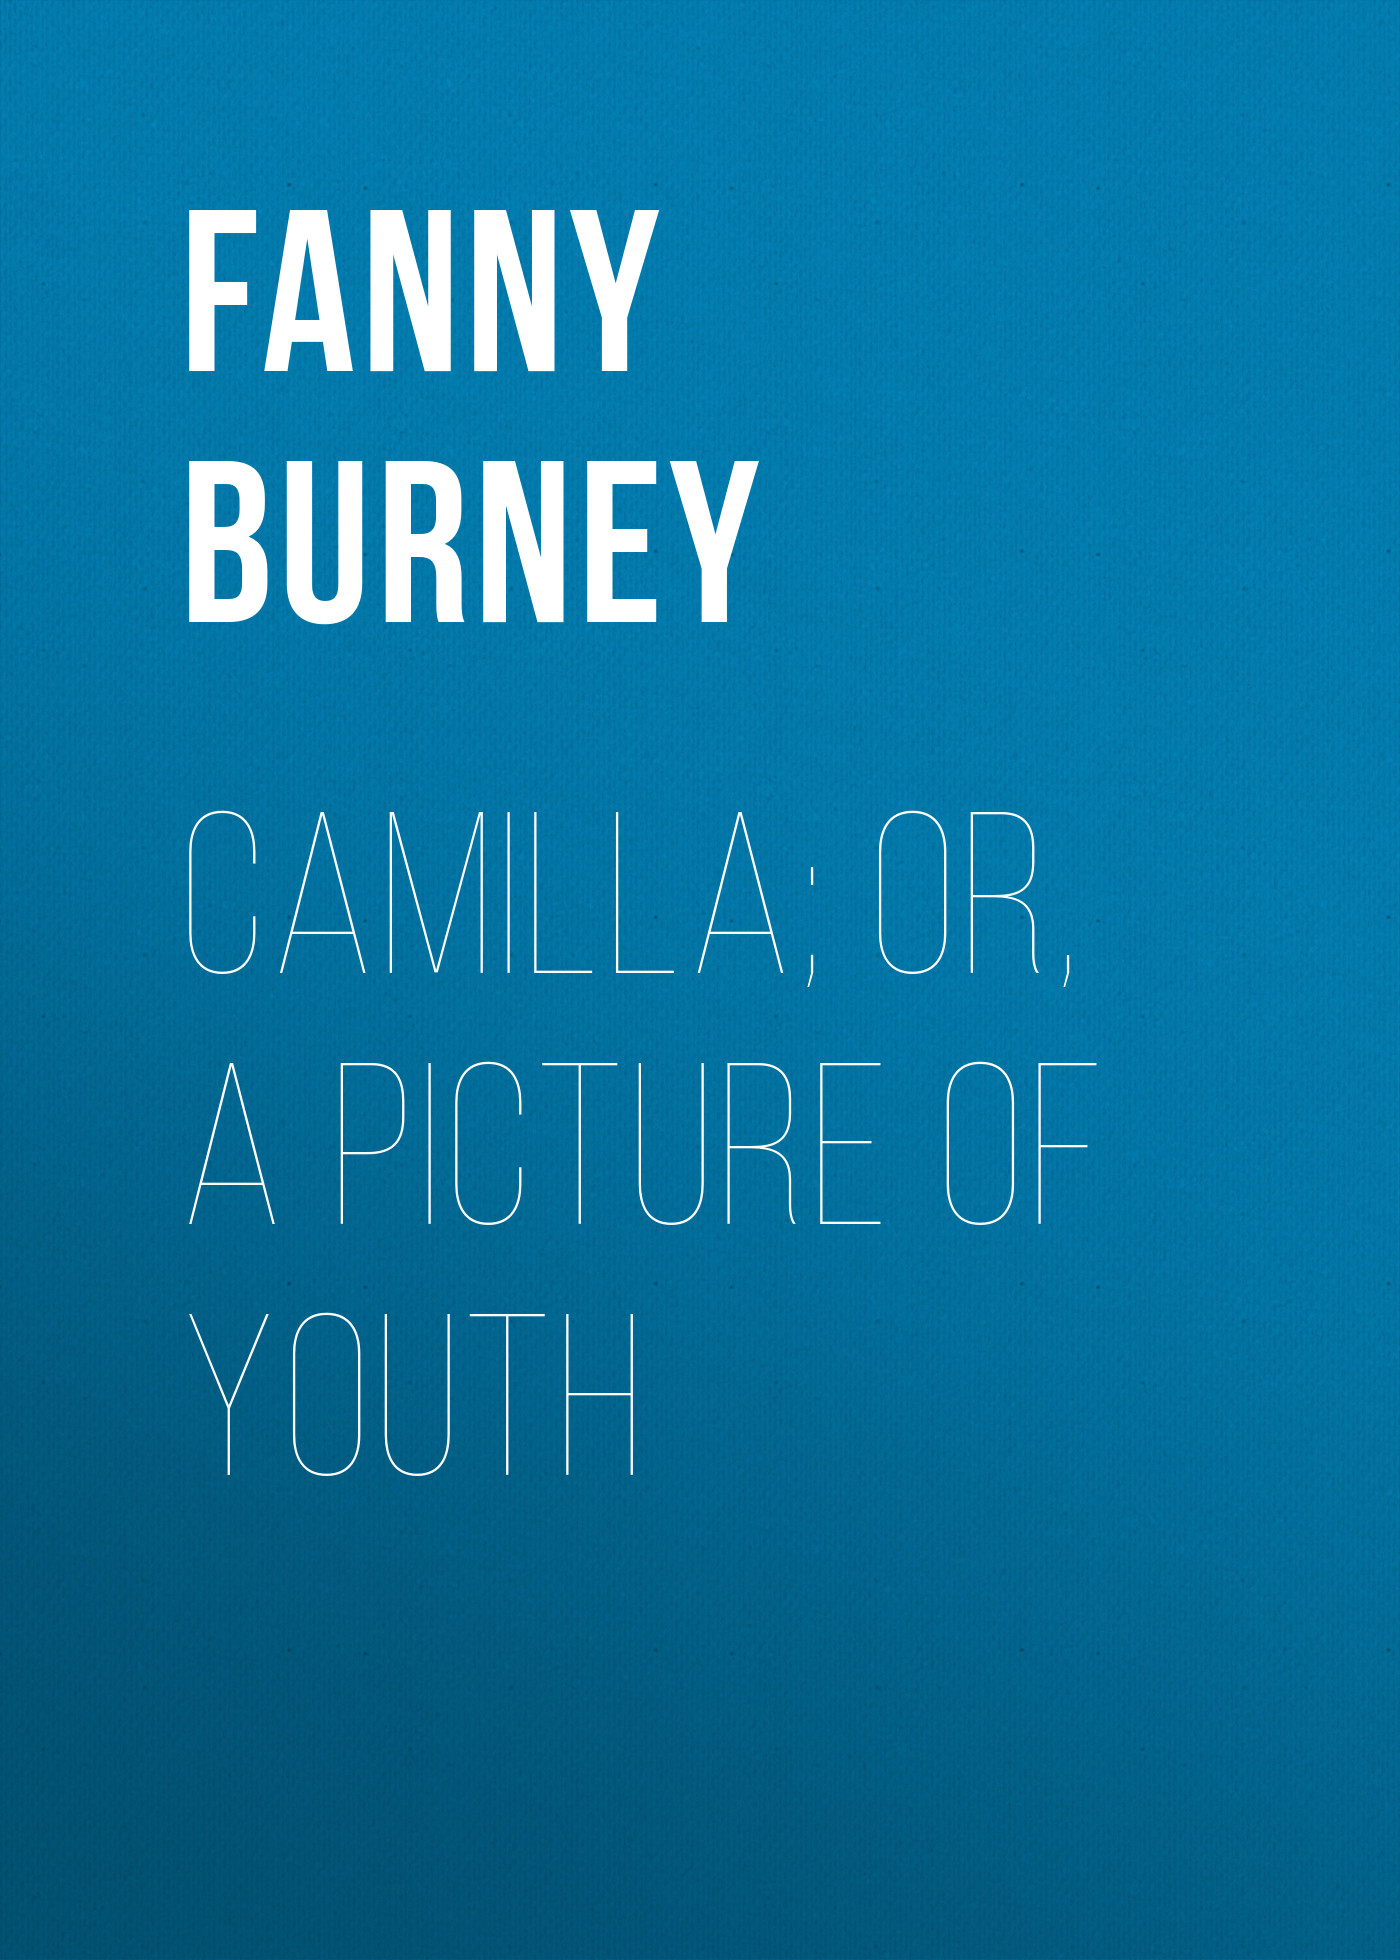 Книга Camilla; or, A Picture of Youth из серии , созданная Fanny Burney, может относится к жанру Зарубежная старинная литература, Зарубежная классика. Стоимость электронной книги Camilla; or, A Picture of Youth с идентификатором 24165948 составляет 0.90 руб.